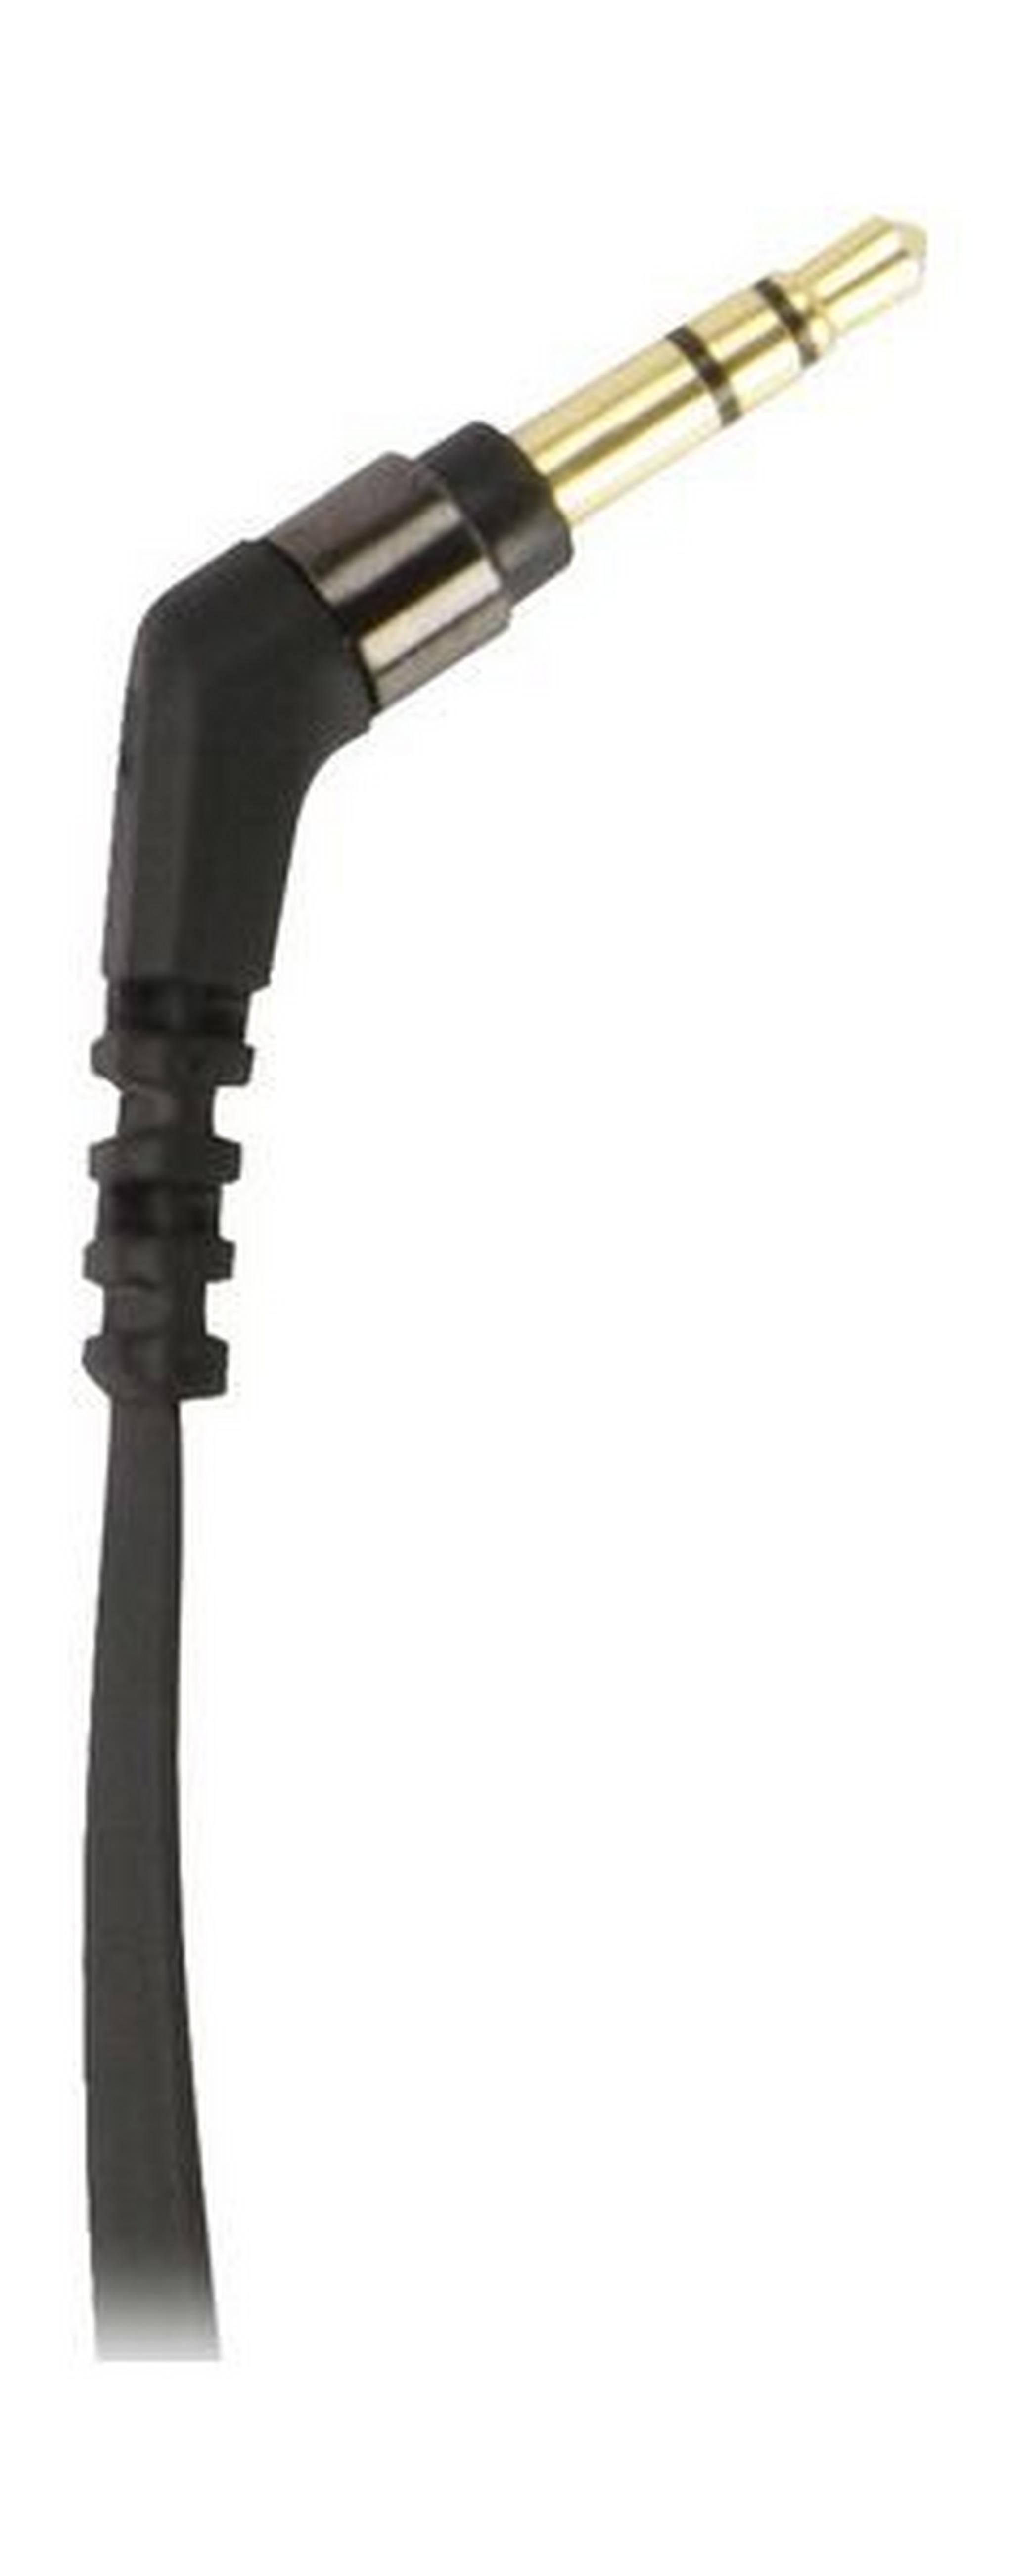 Scosche AUX Flatout Audio Cable 1.8-meter (SC-AUX6F) - Black